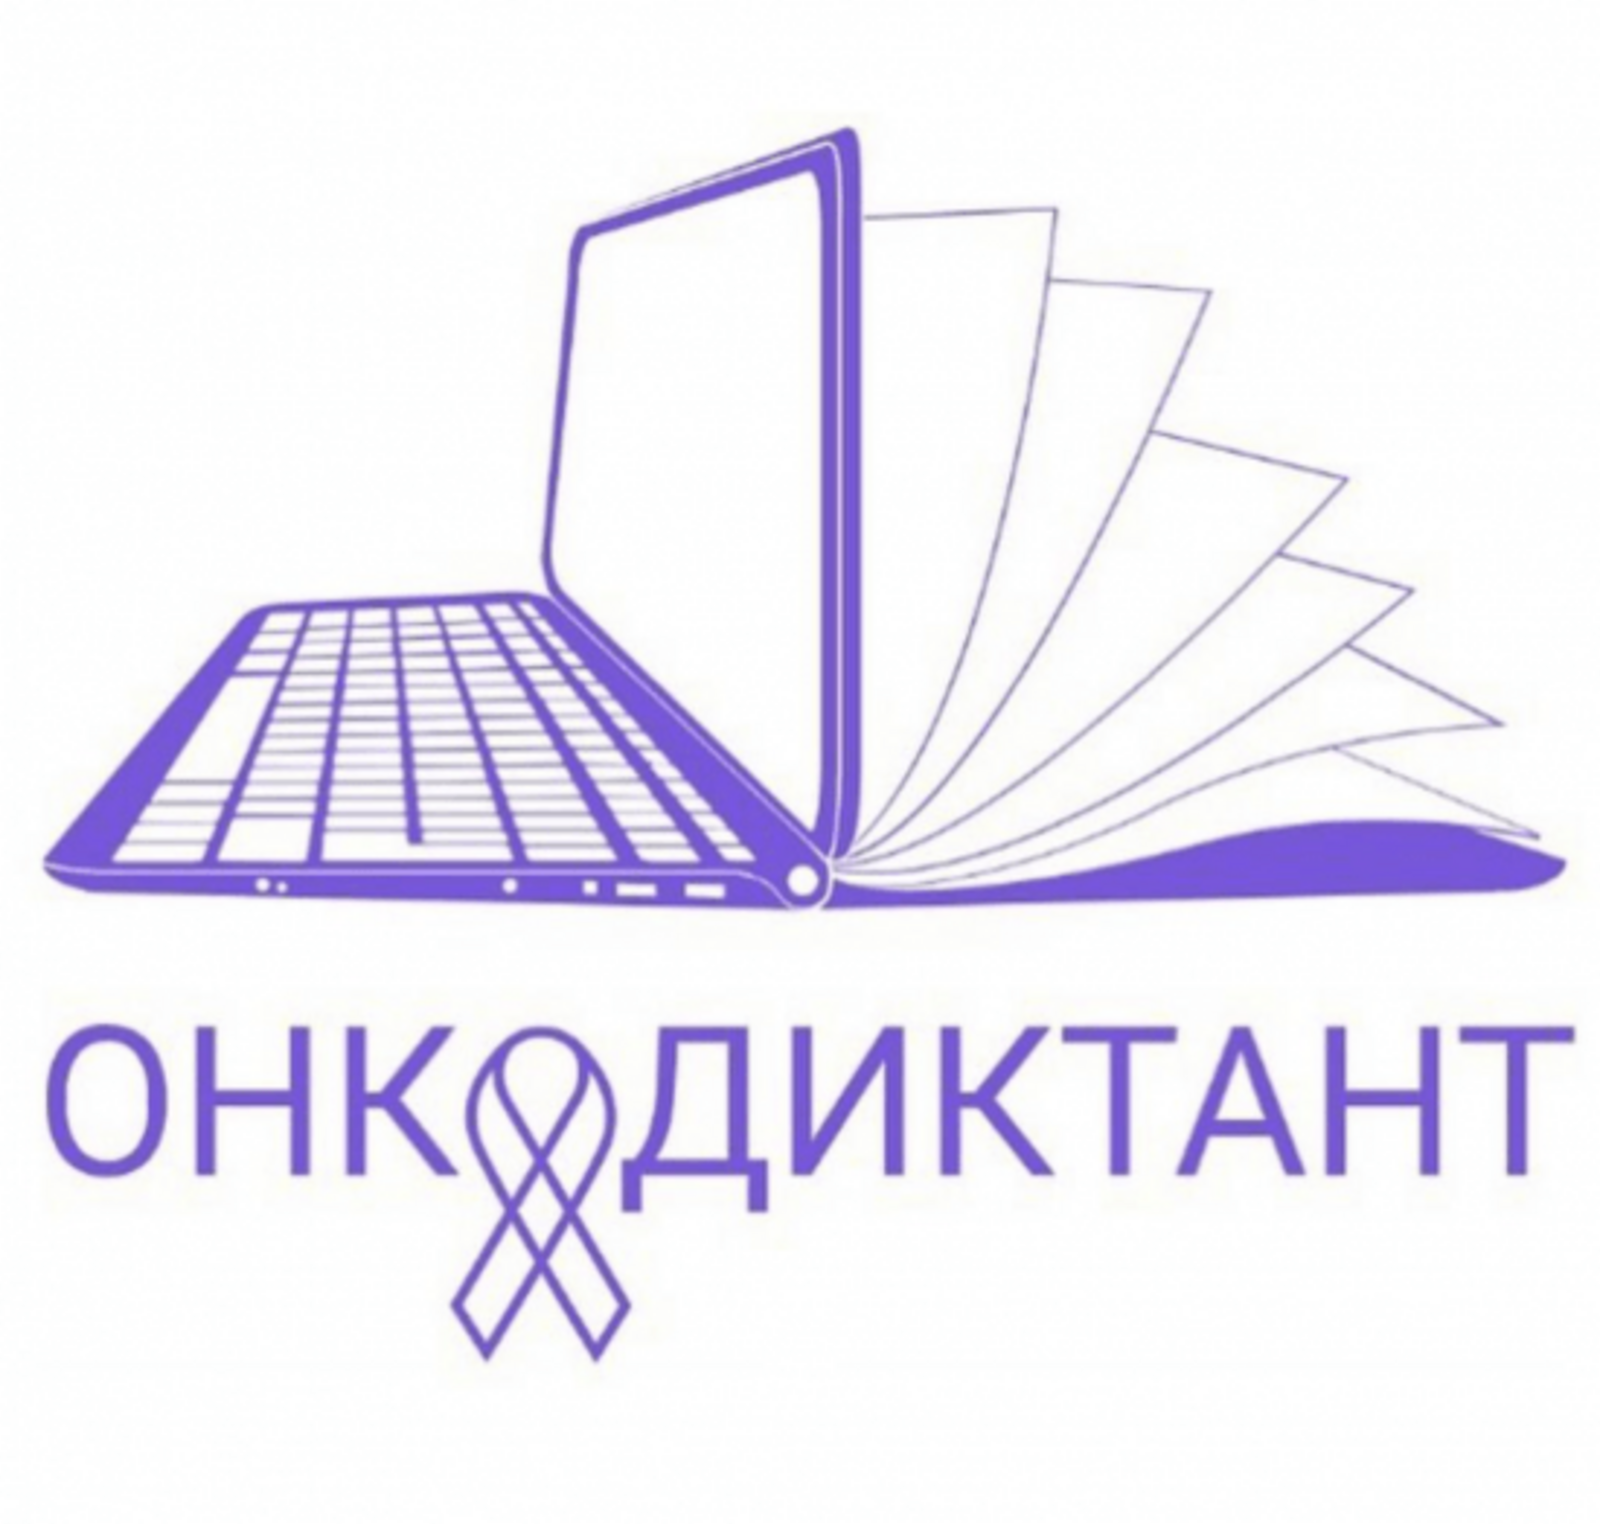 Жители Башкортостана могут принять участие во Всероссийском онкологическом диктанте